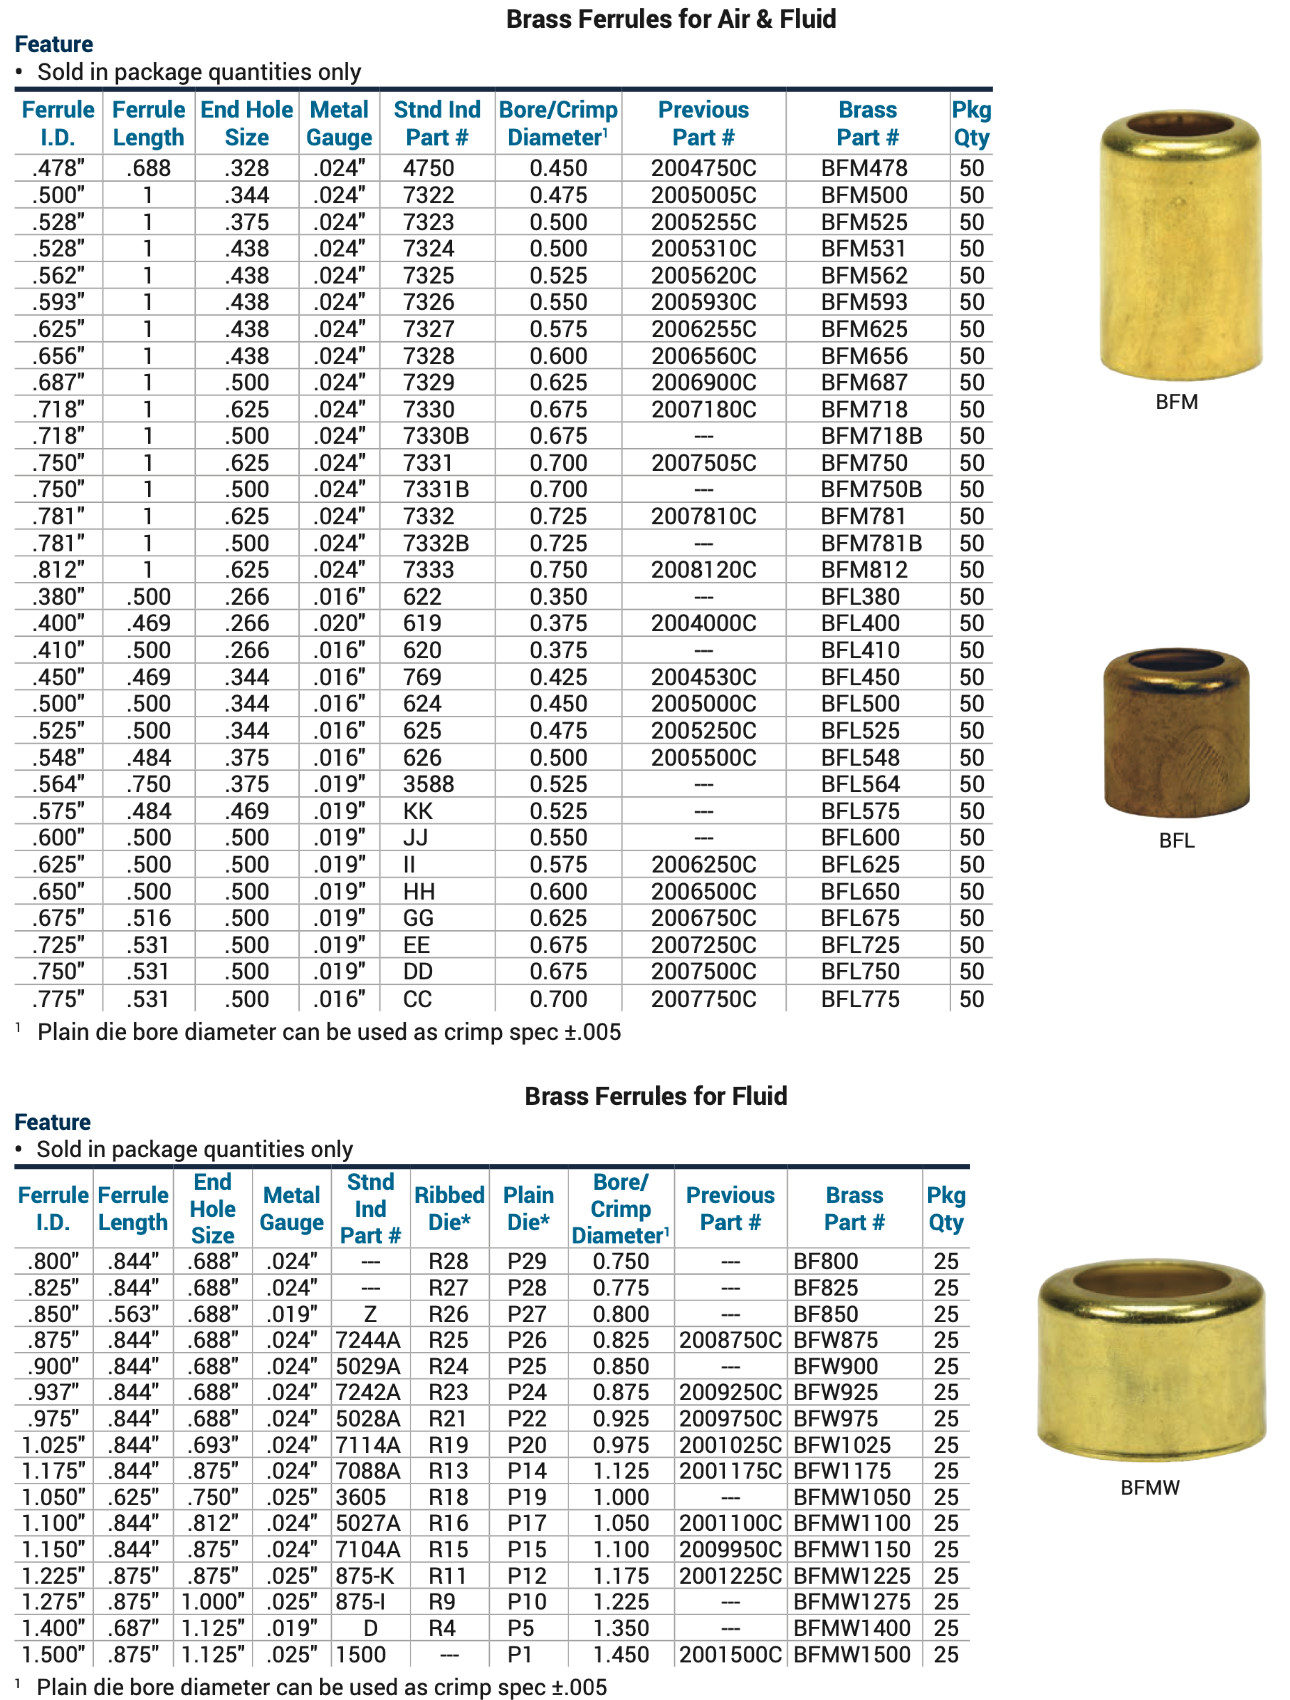 BRASS FERRULE - Brass Ferrule 150gm Size 1/2x1/2 Wholesaler from